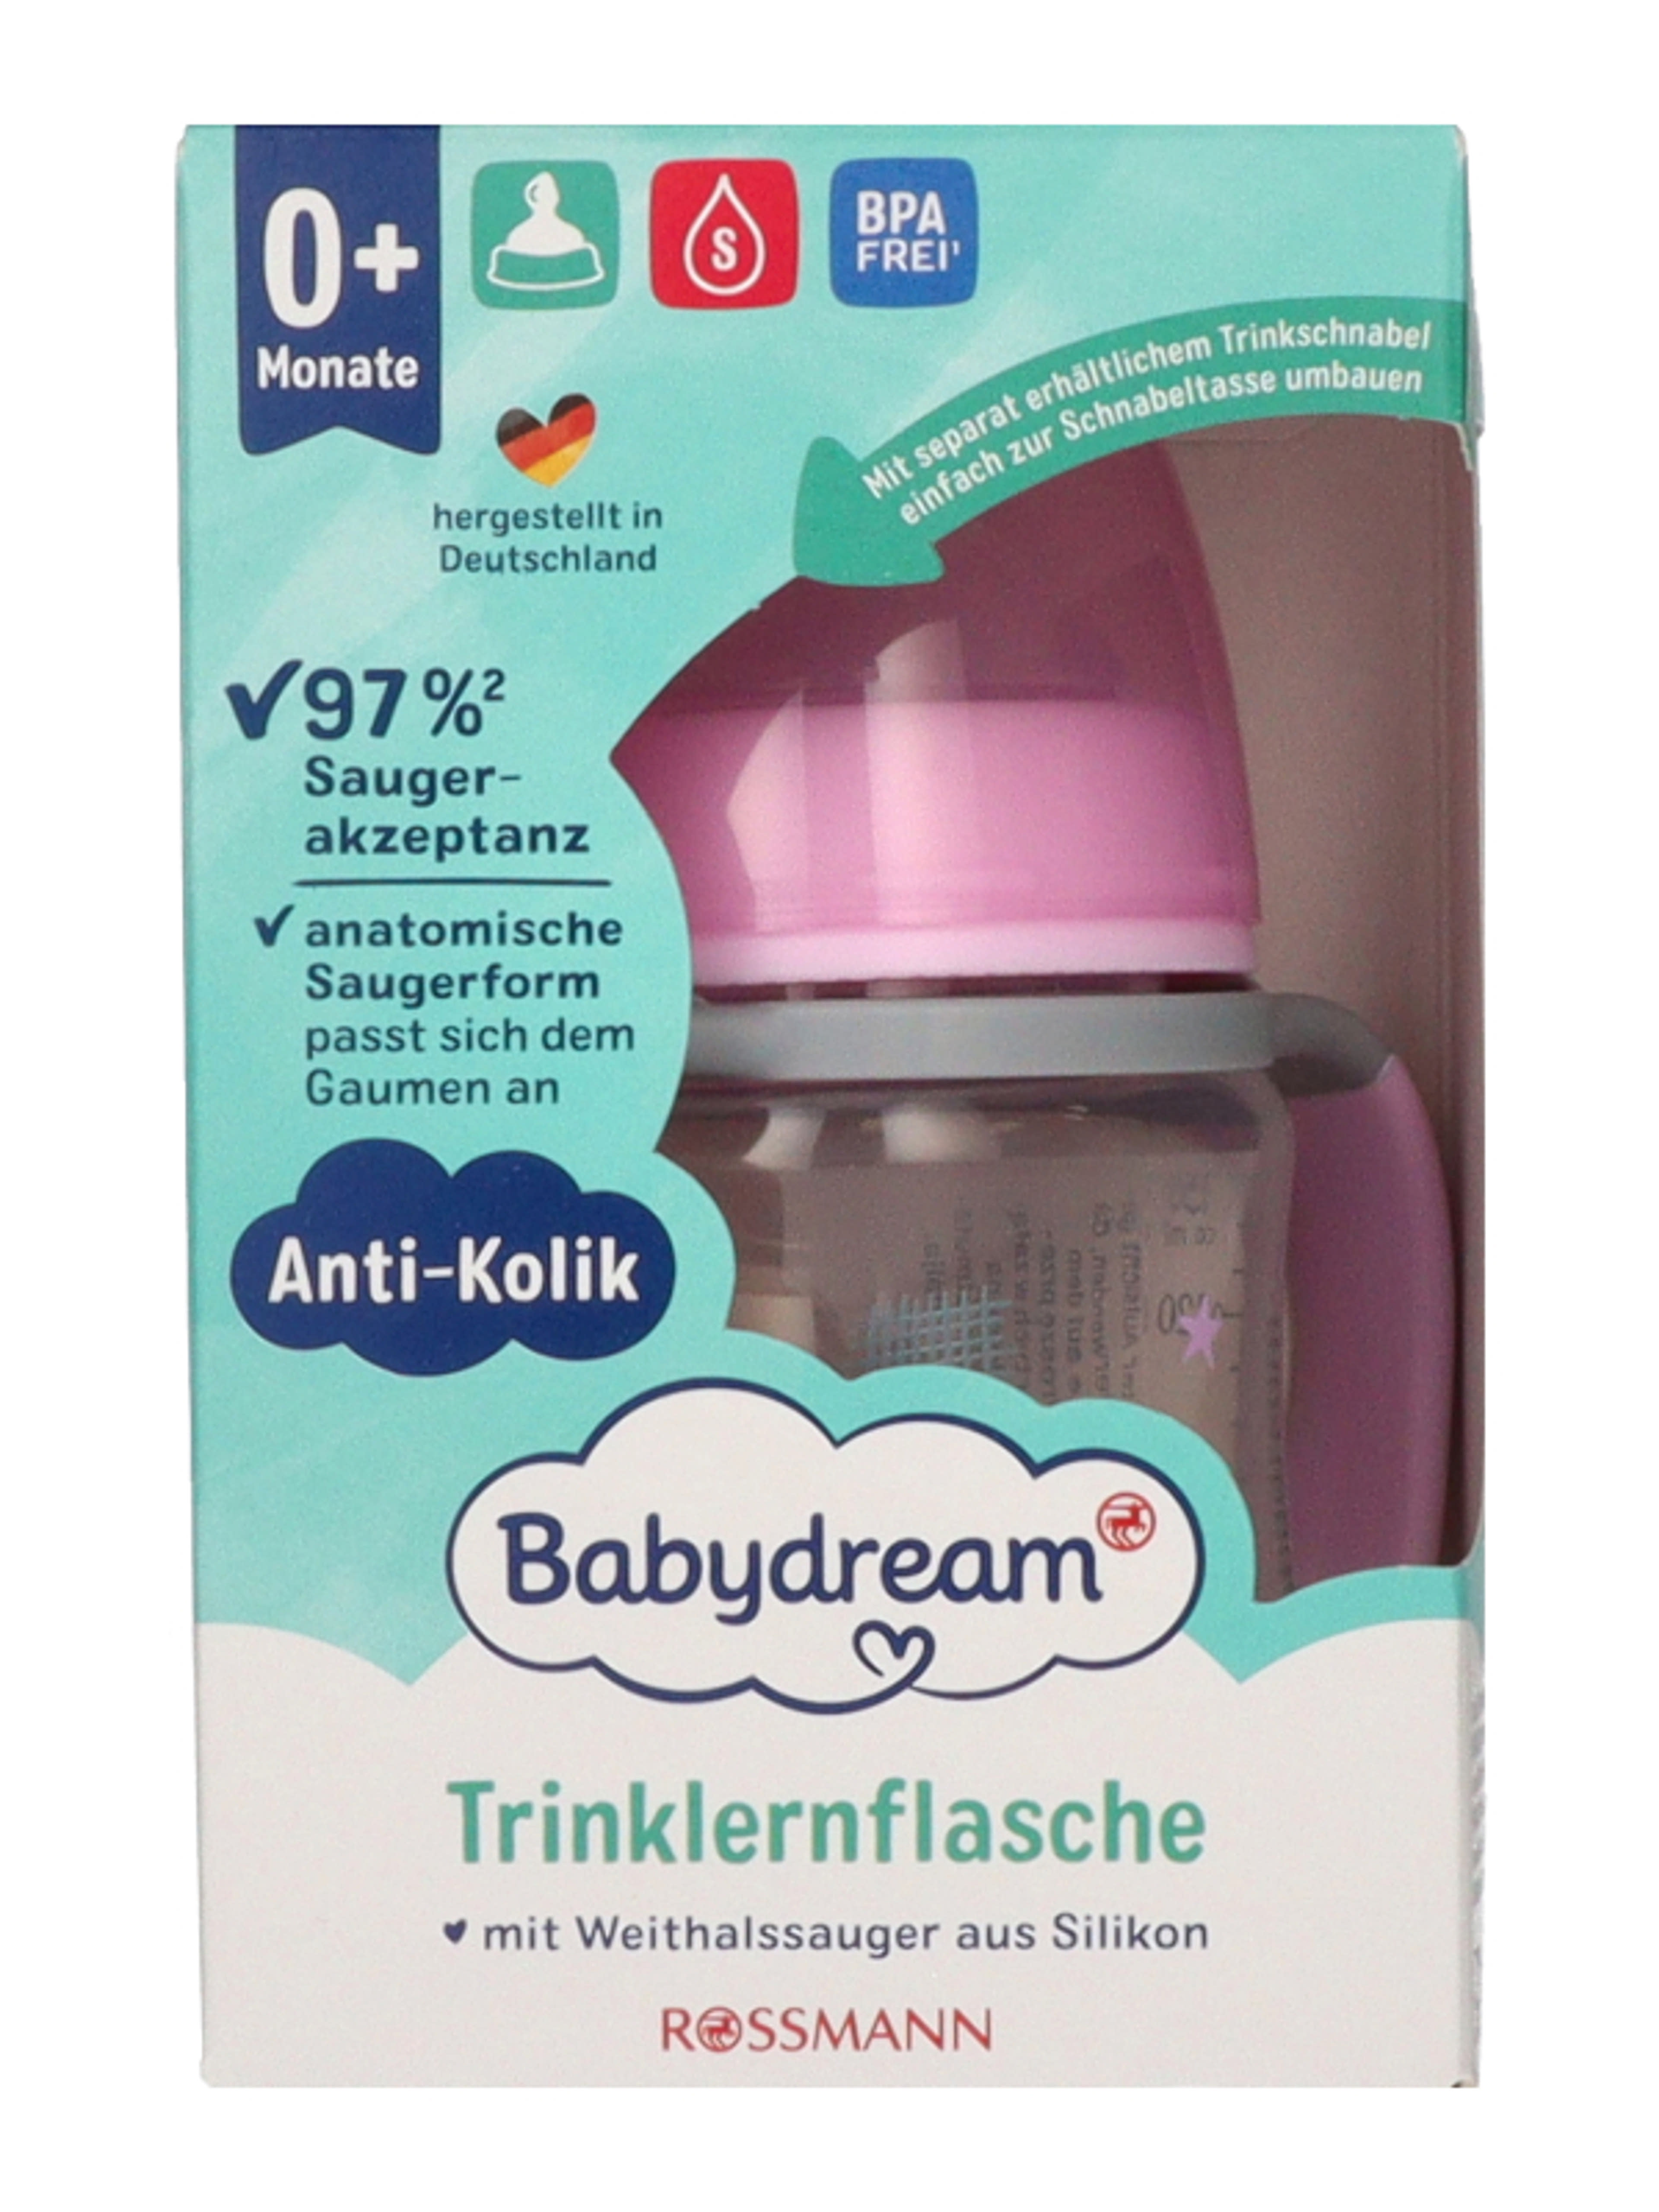 Babydream ivástanító pohár széles nyakú 0-6 hónapos korig 150 ml - 1 db-2